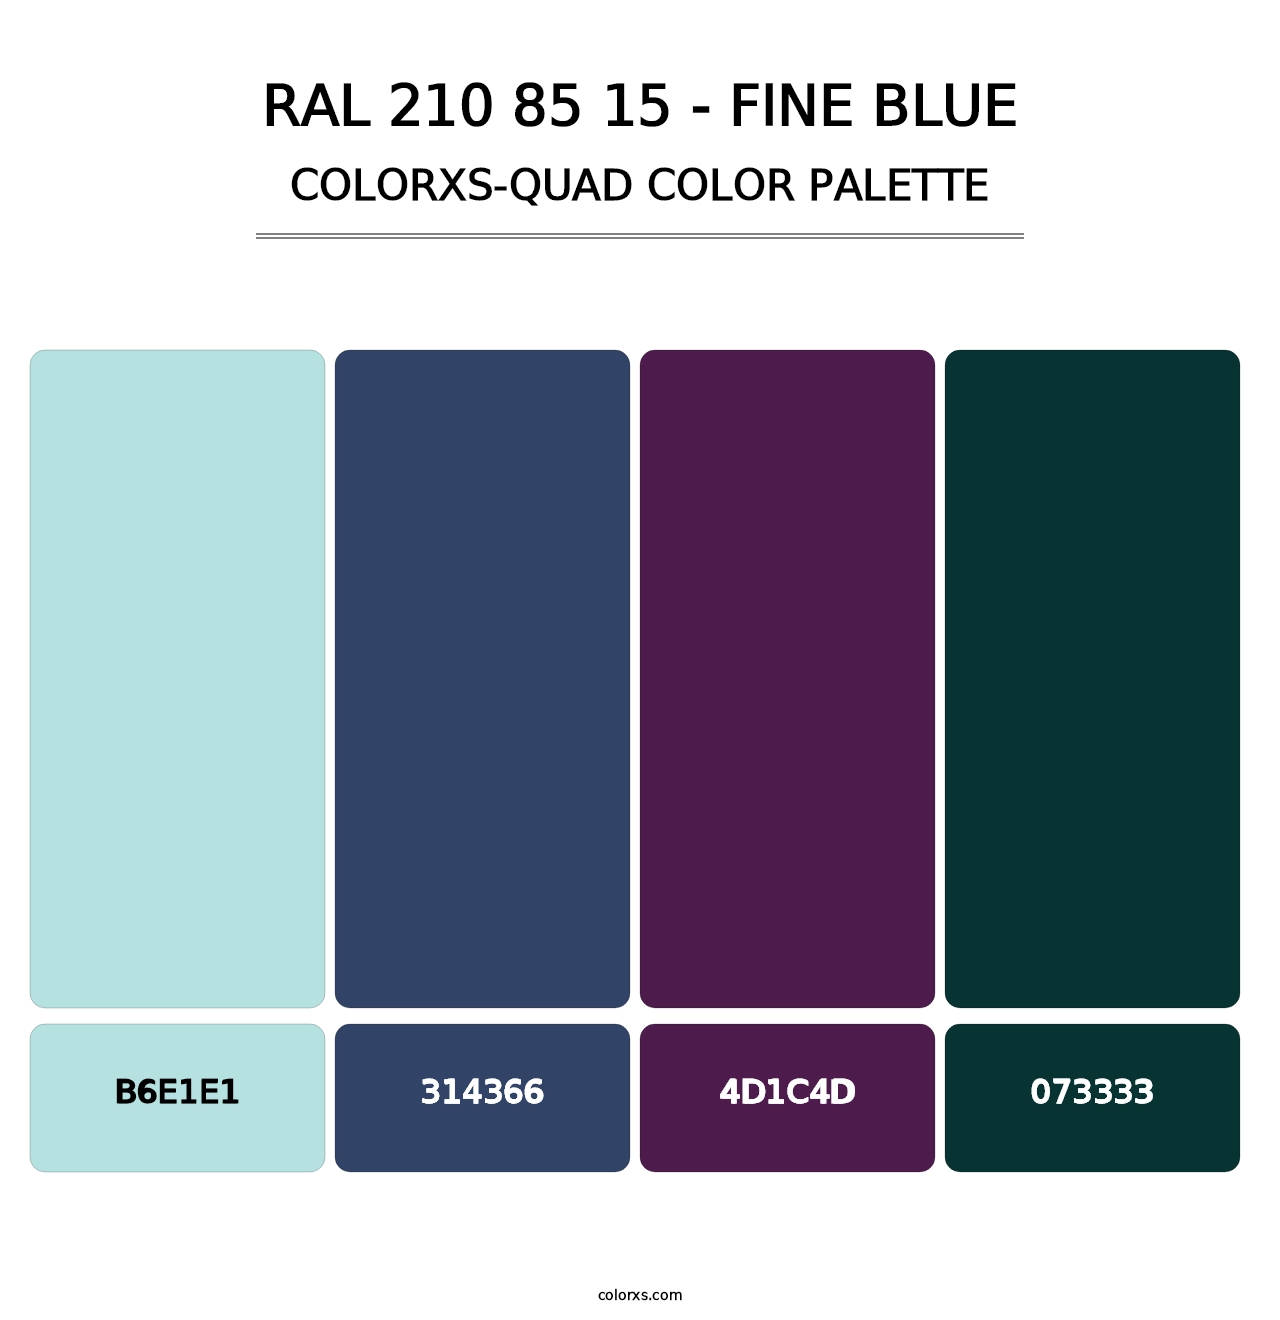 RAL 210 85 15 - Fine Blue - Colorxs Quad Palette